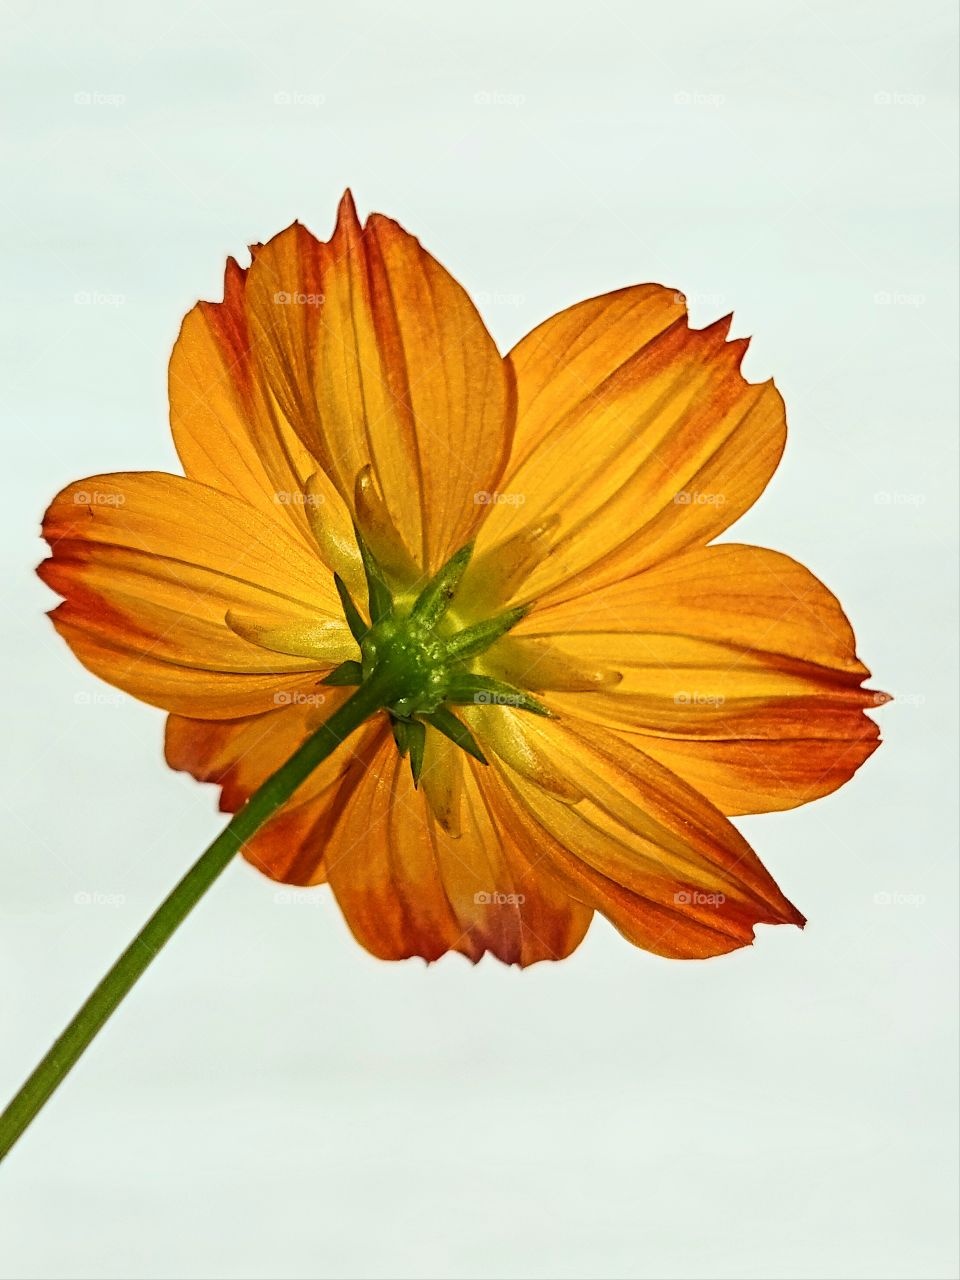 Orange translucent flower from behind